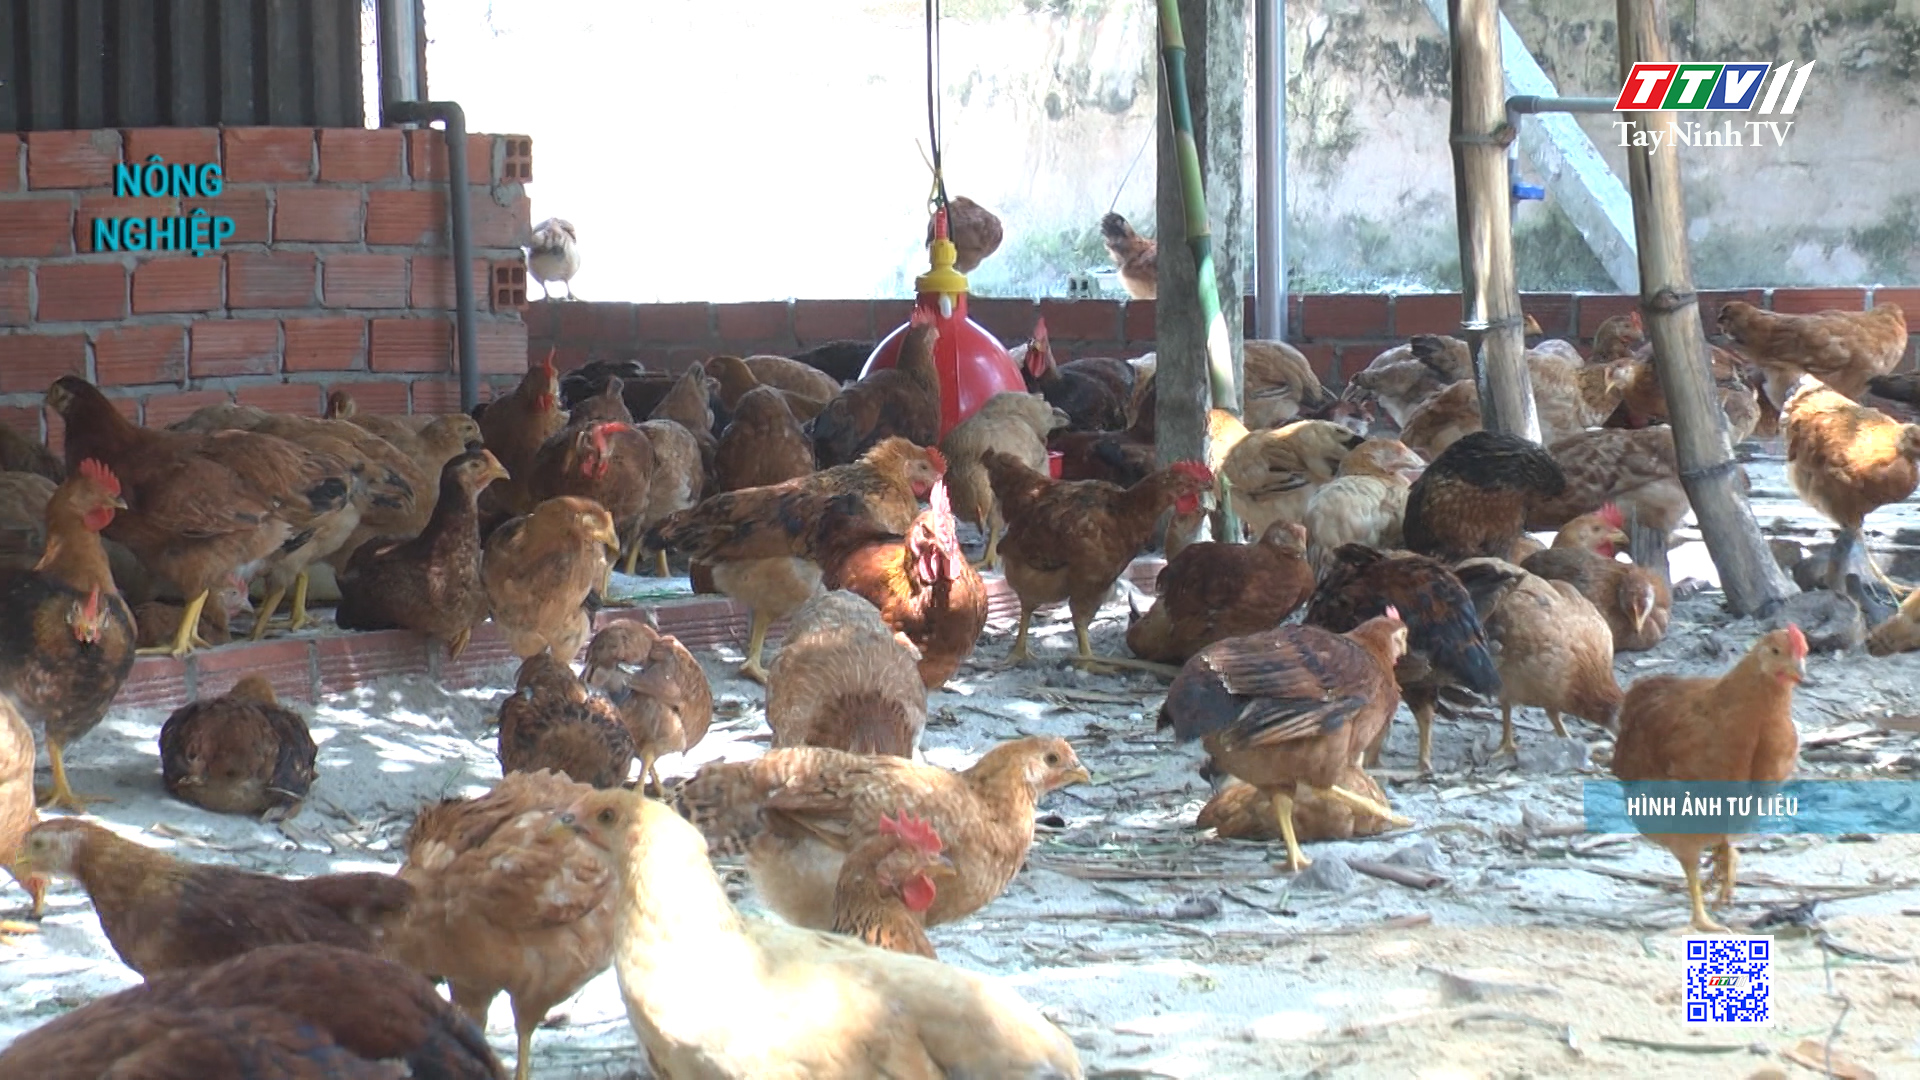 Phát triển chăn nuôi nhờ sử dụng vốn vay đúng mục đích | NÔNG NGHIỆP TÂY NINH | TayNinhTV